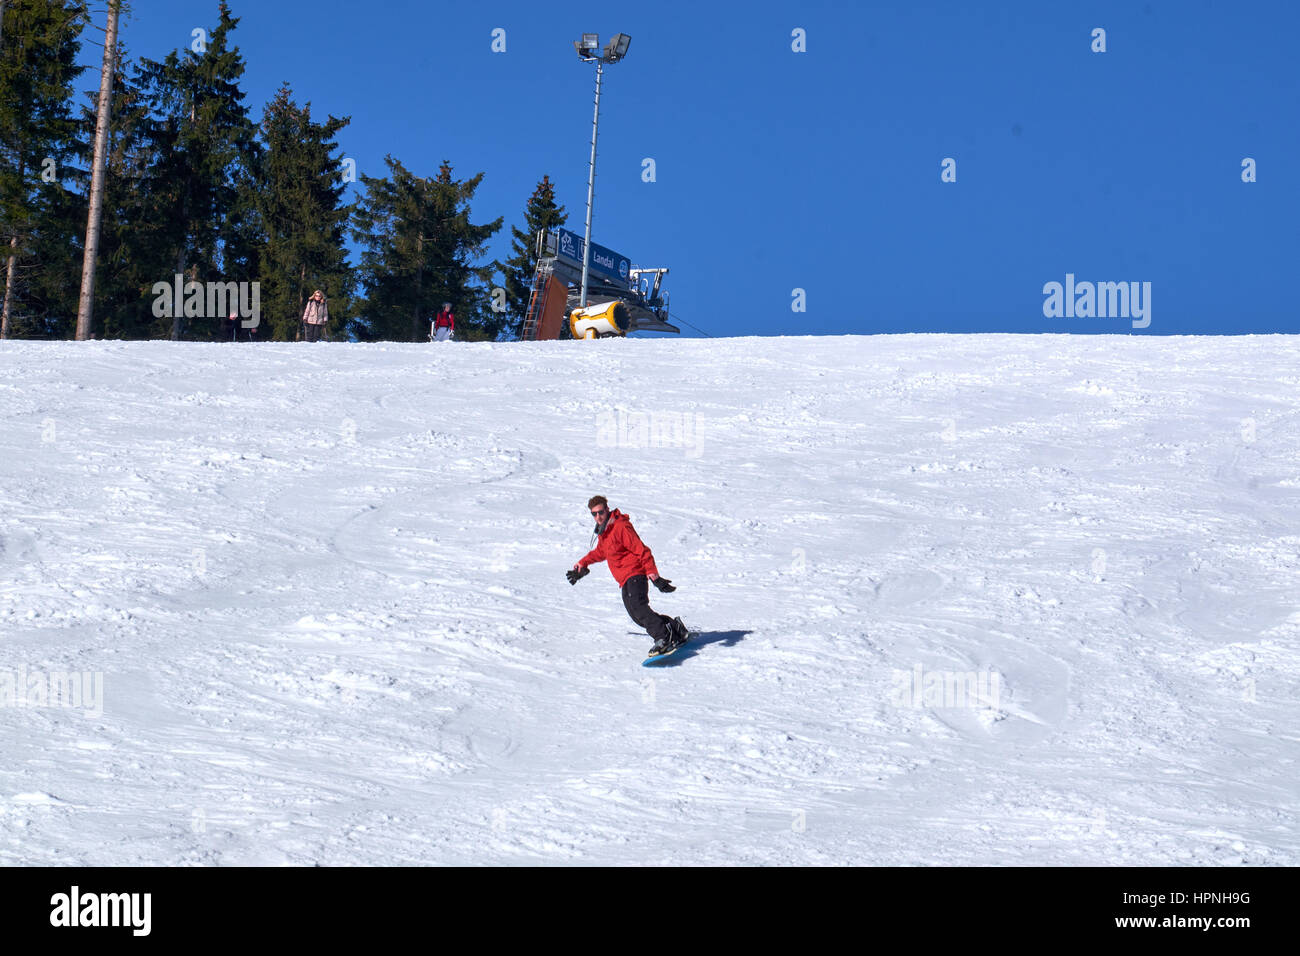 WINTERBERG, Deutschland - 15. Februar 2017: Mann auf Snowboard auf seinem Weg nach unten eine Piste in Ski-Karussell Winterberg Stockfoto